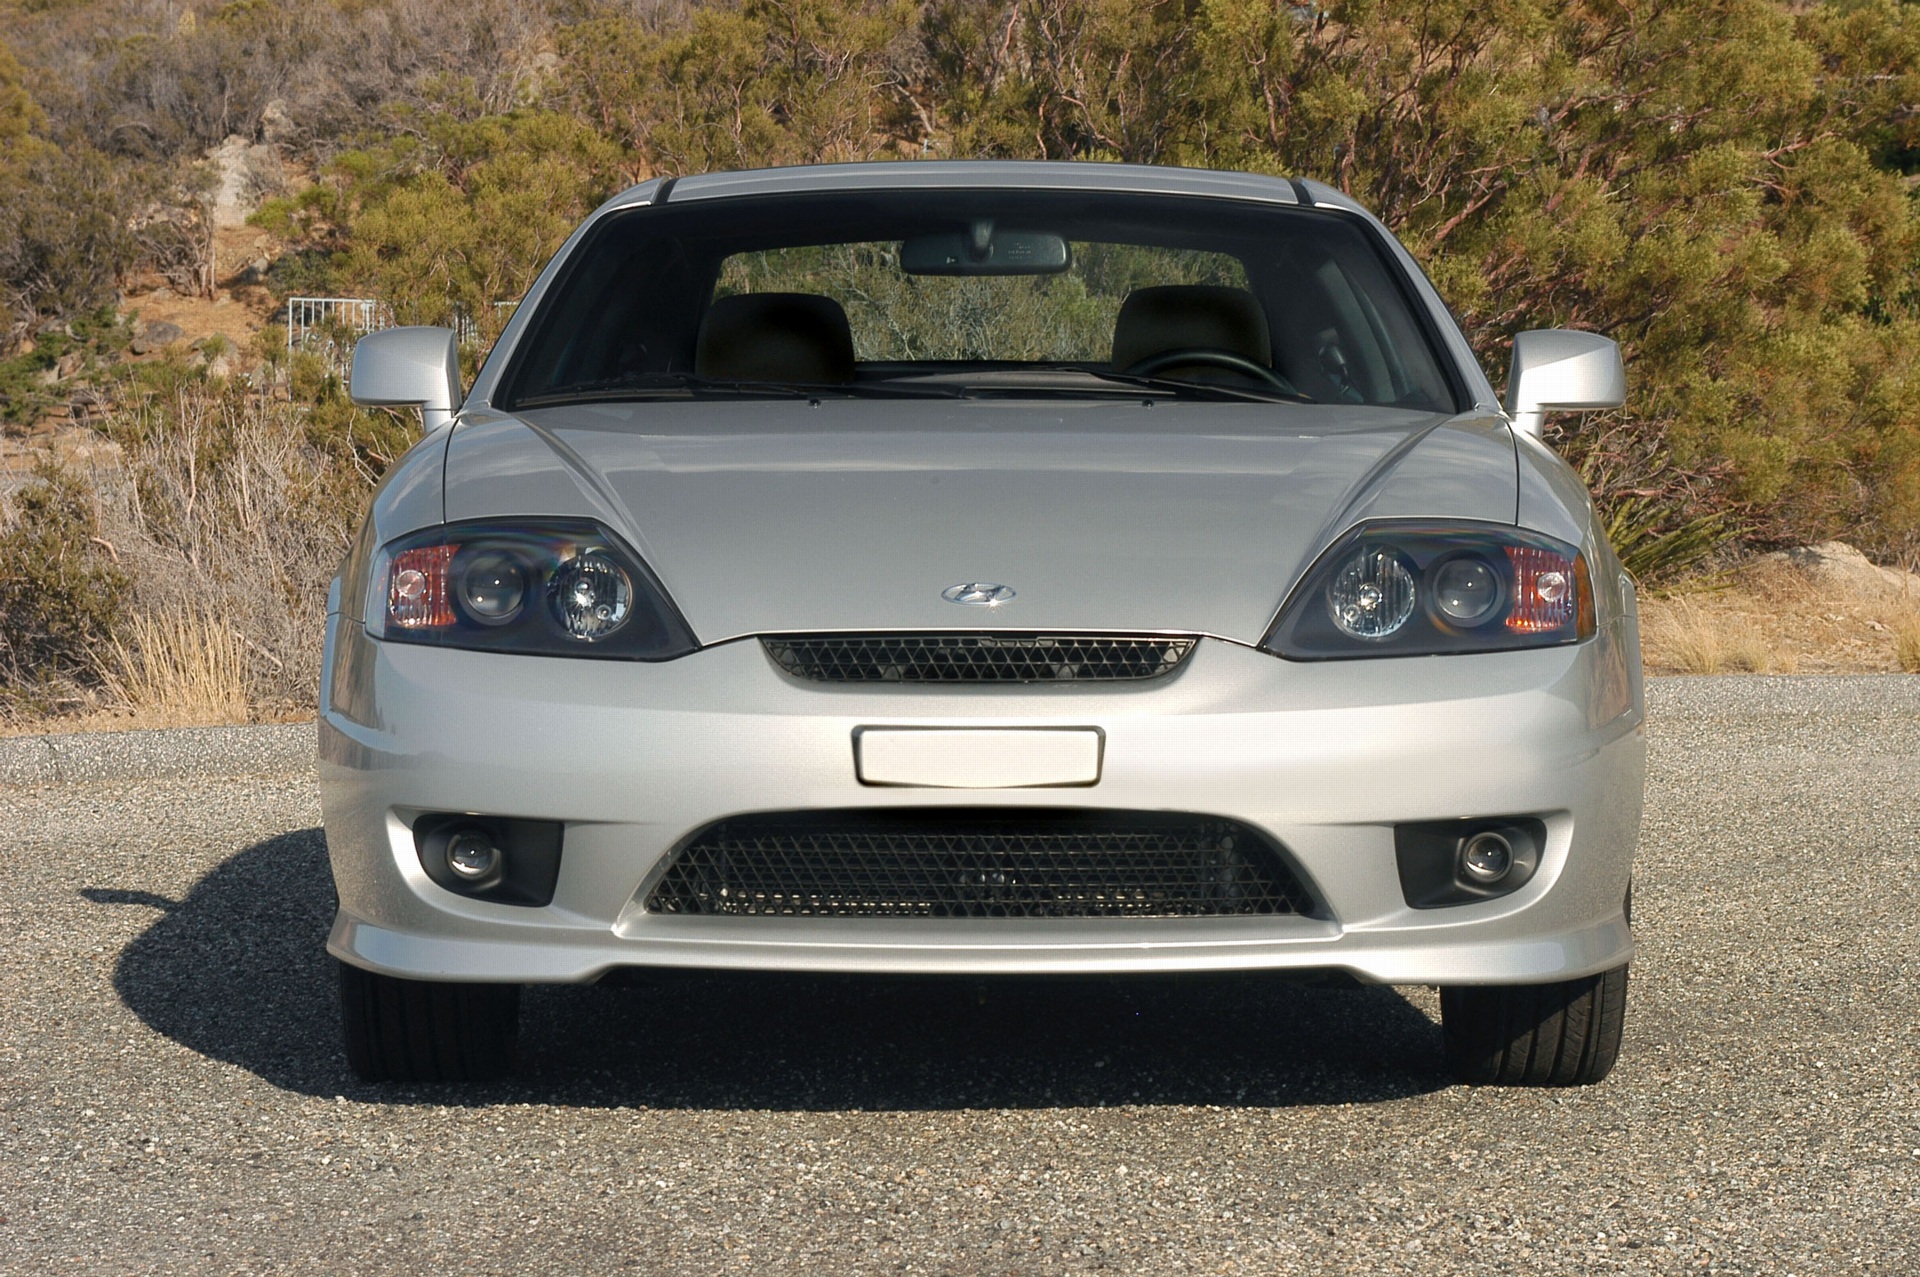 2005 Hyundai Tiburon